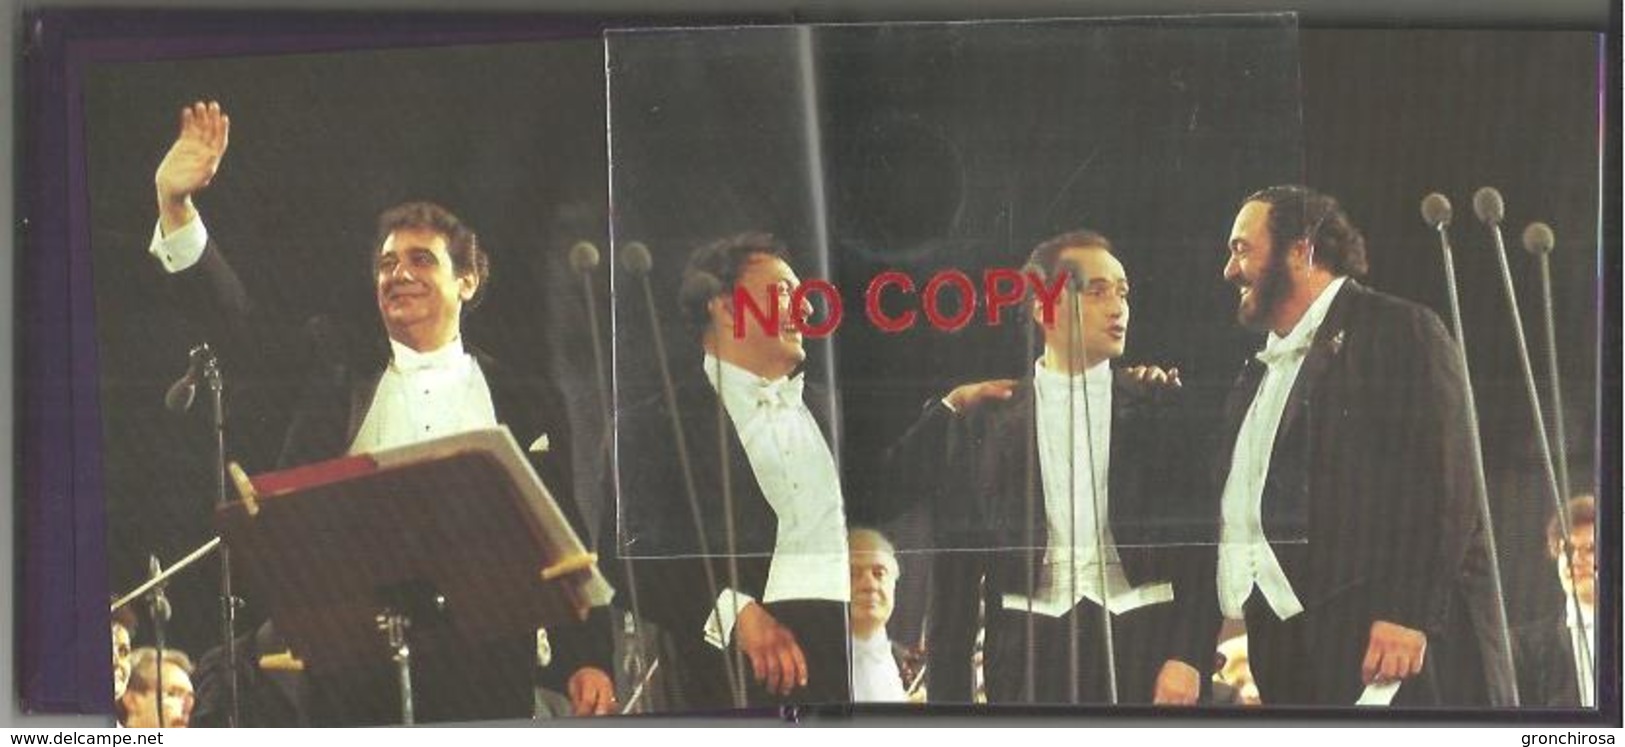 The Three Tenors In Concert, Carreras, Domingo, Pavarotti. Annullo Celebrativo Modena 21.6.1997. - Music